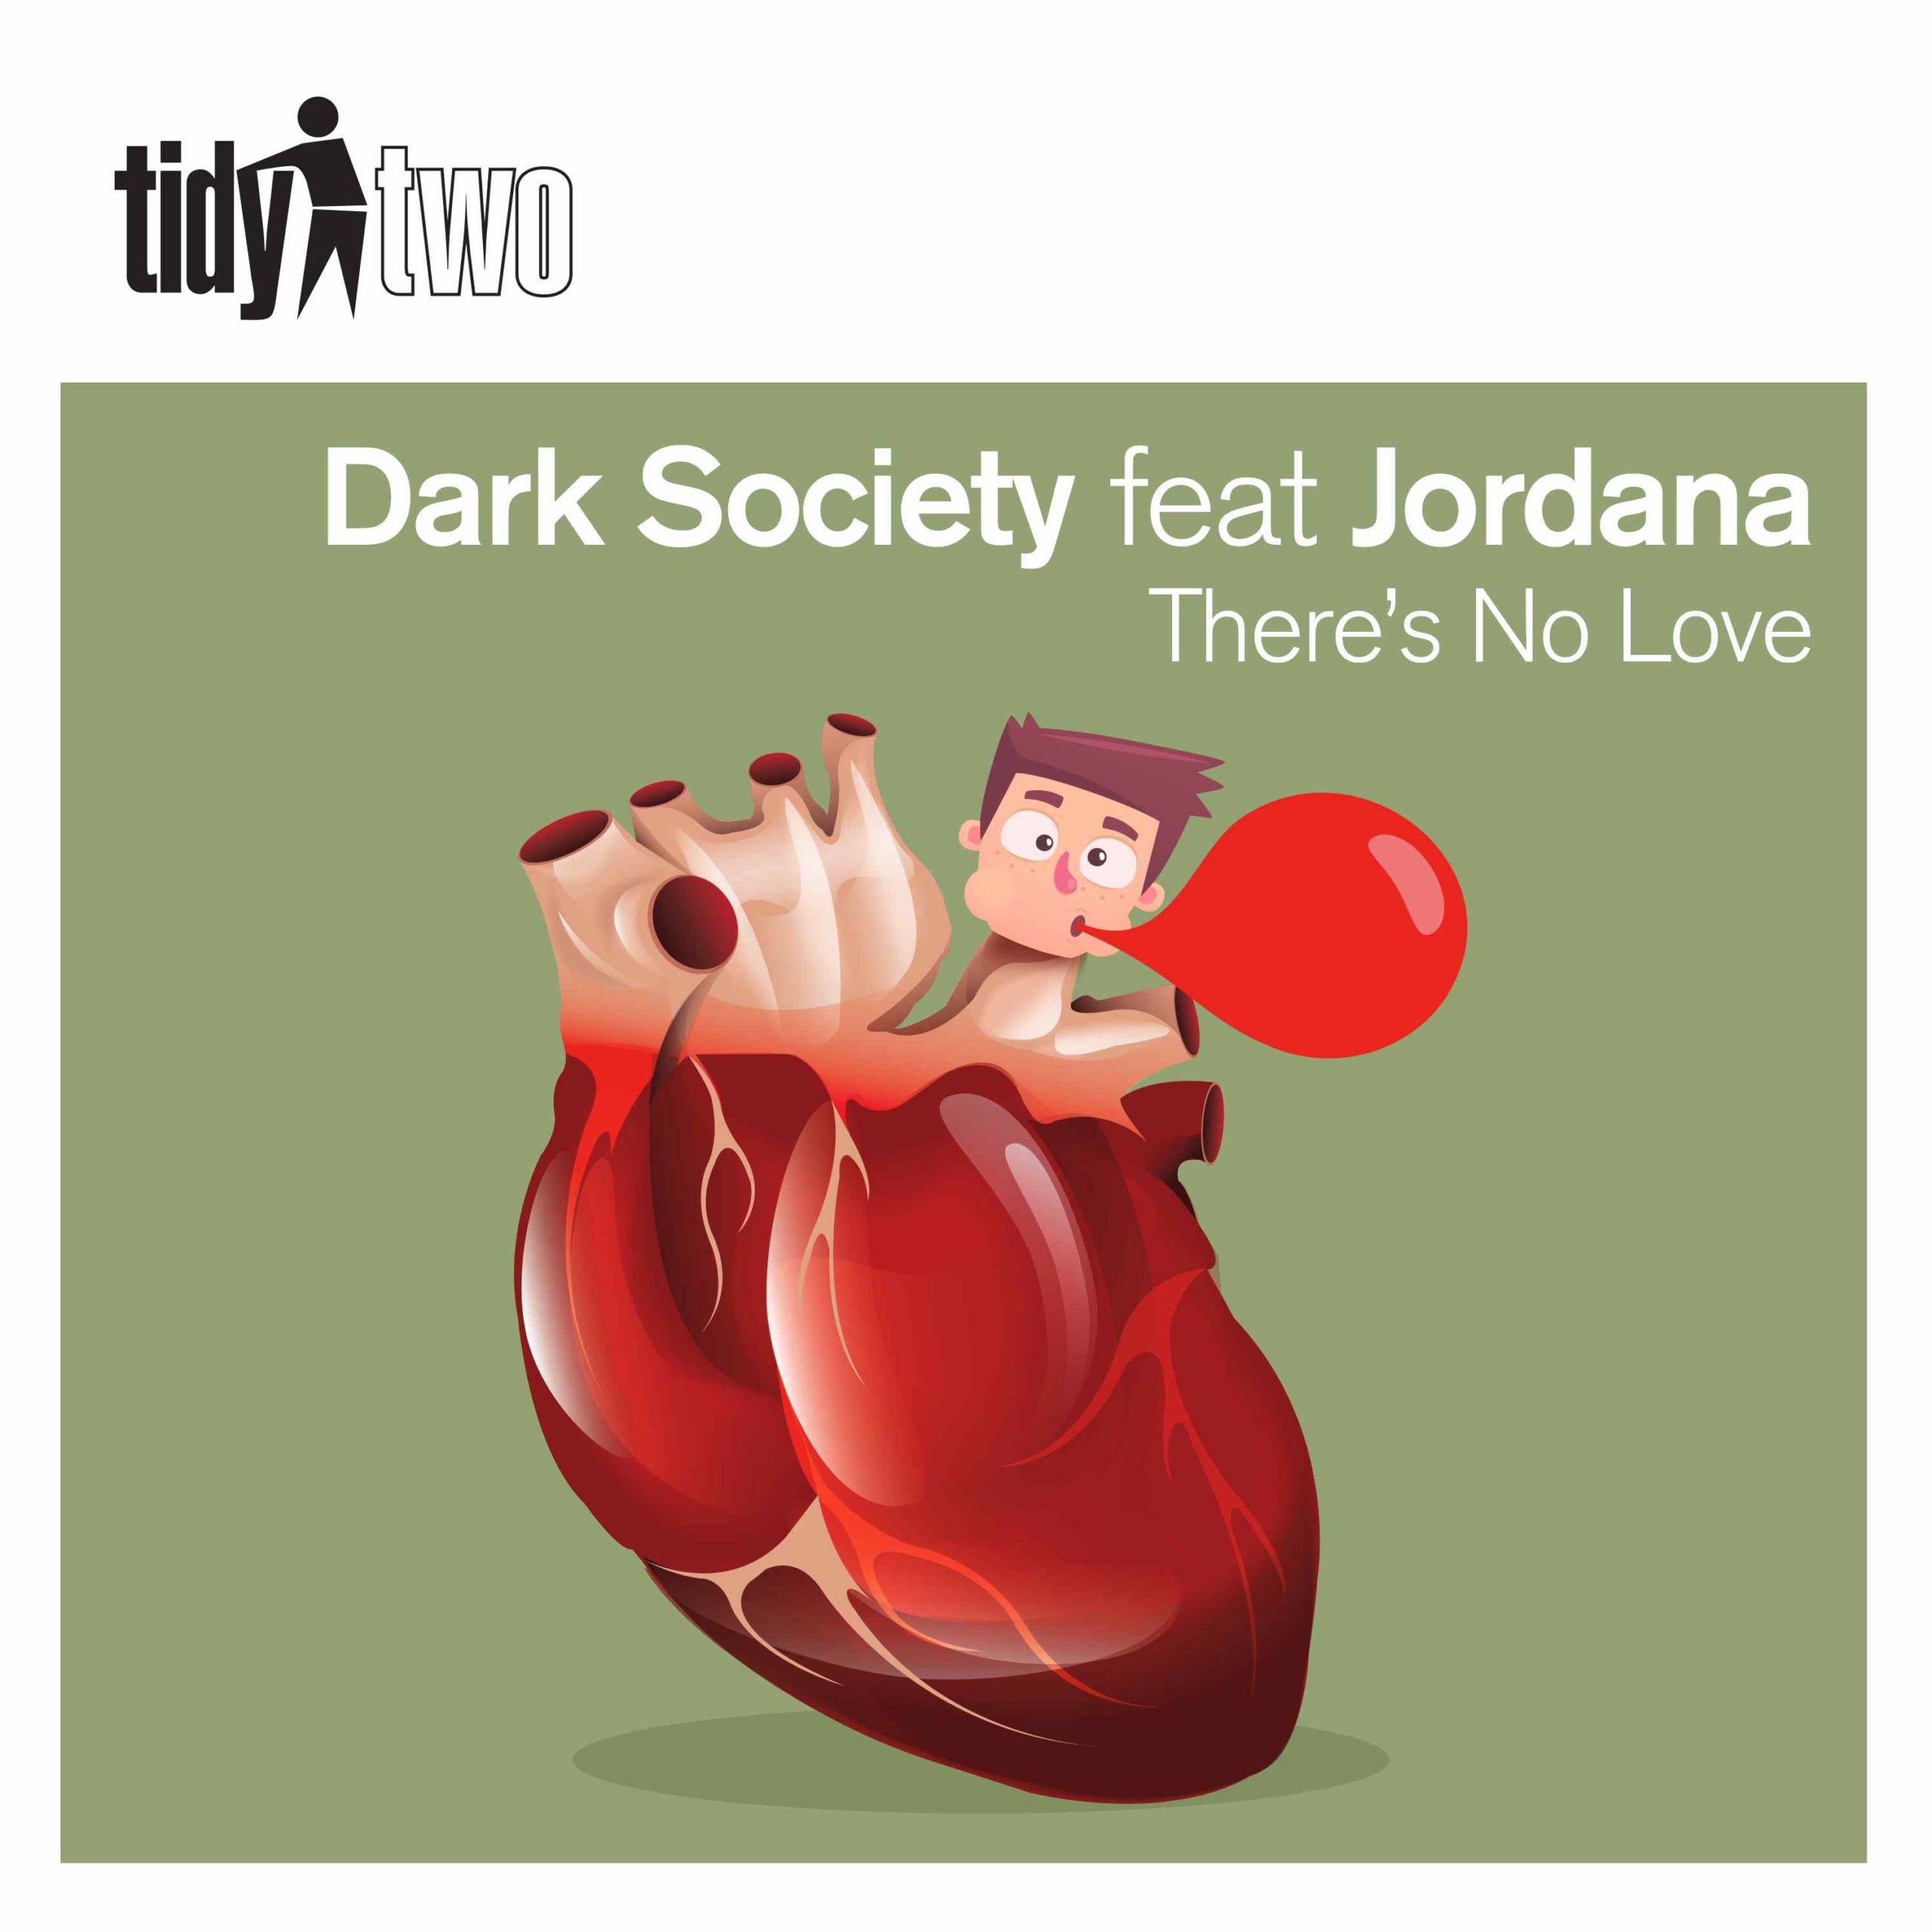 Dark Society feat. Jordana - There's No Love